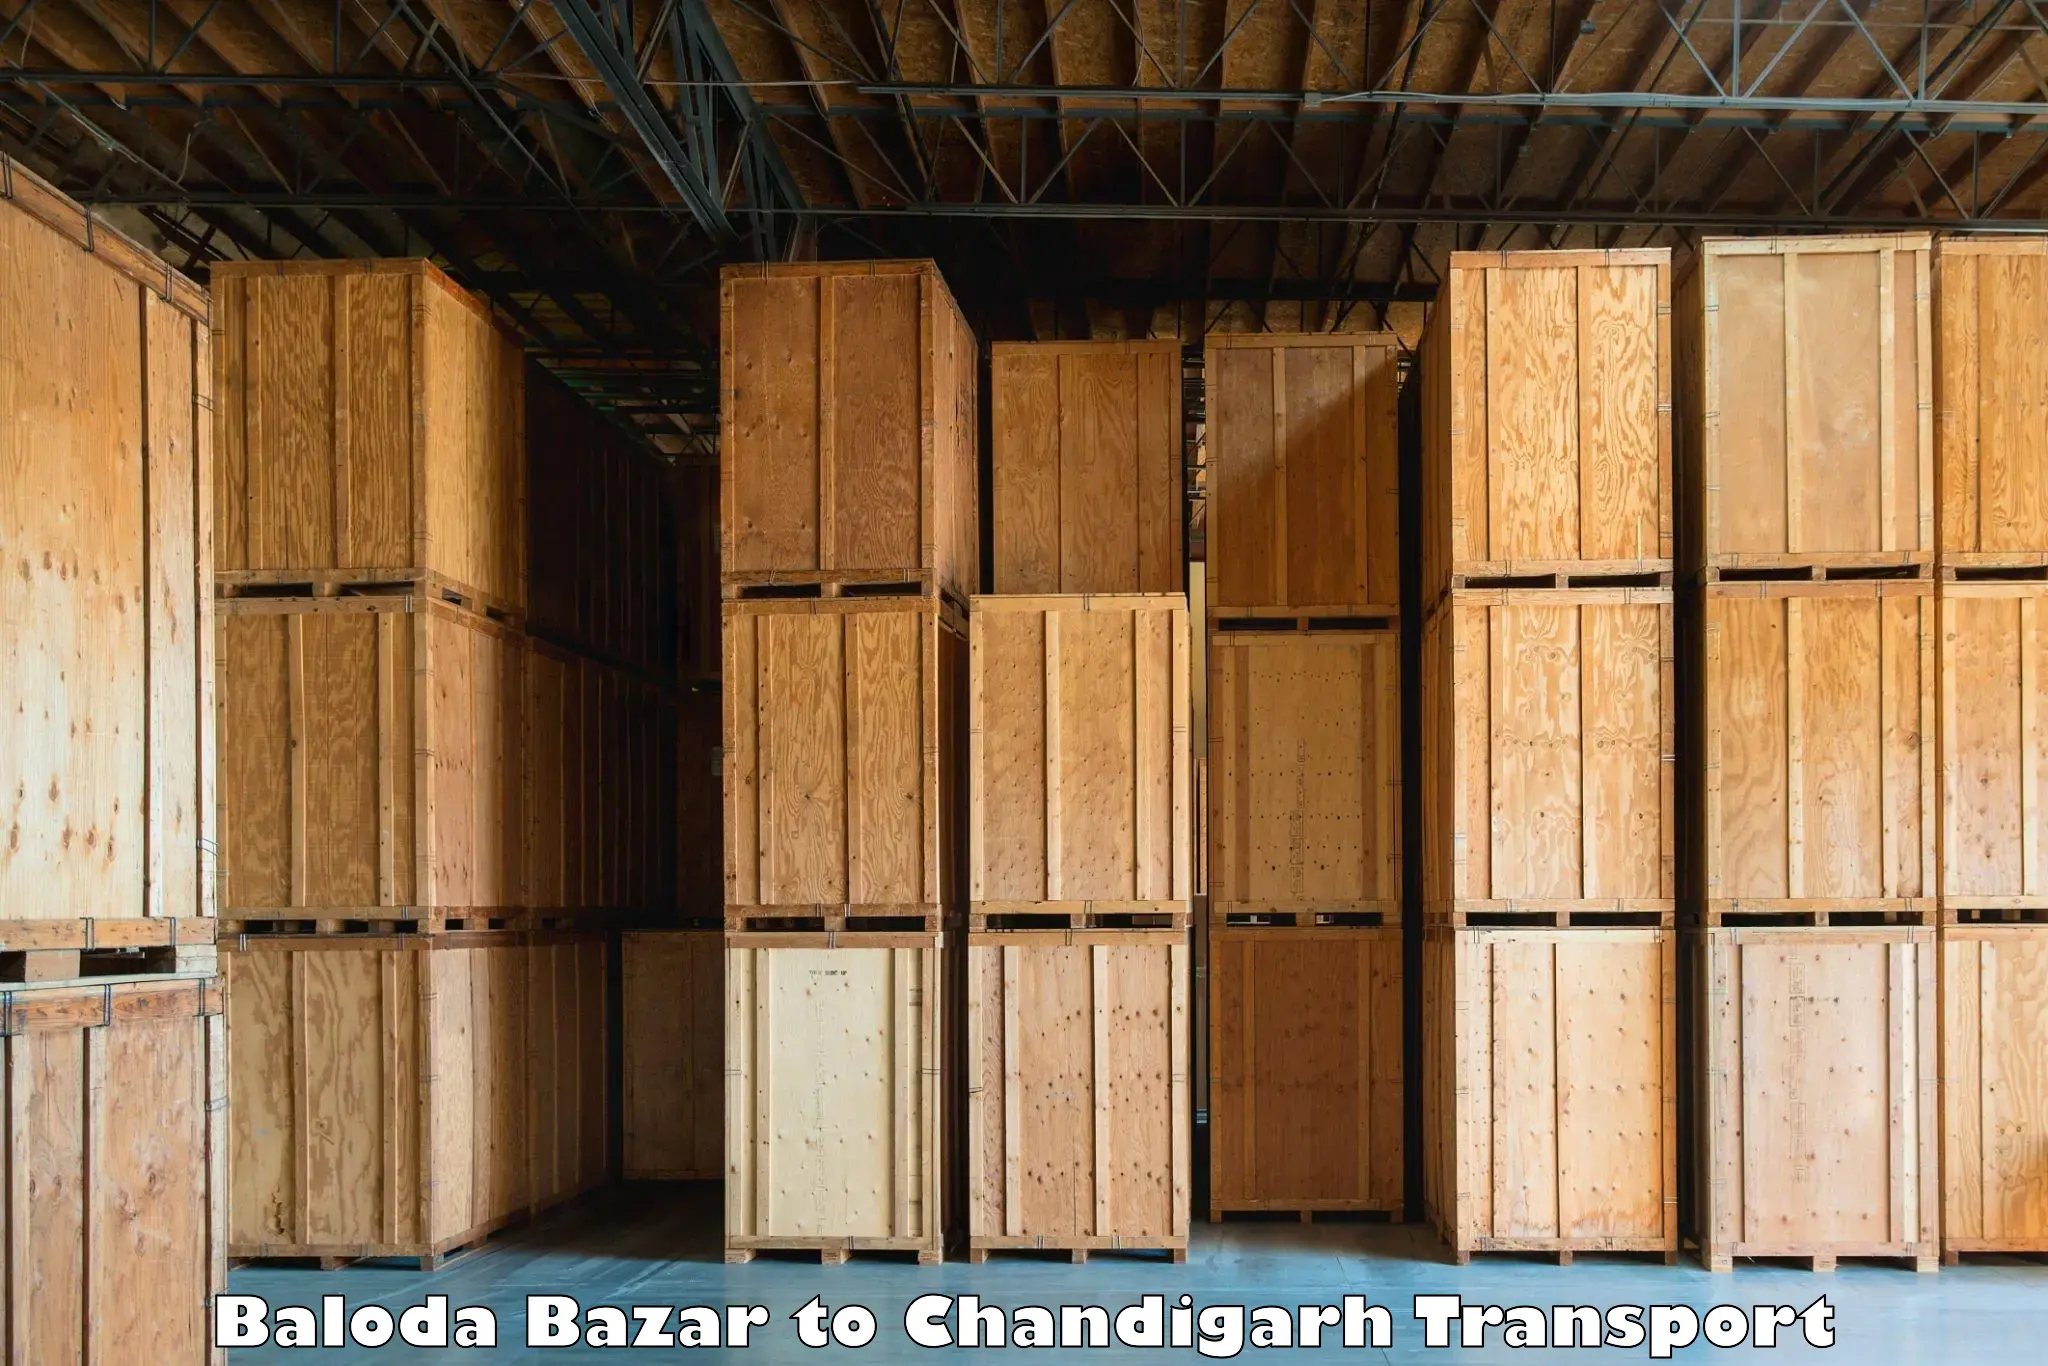 Online transport service Baloda Bazar to Chandigarh